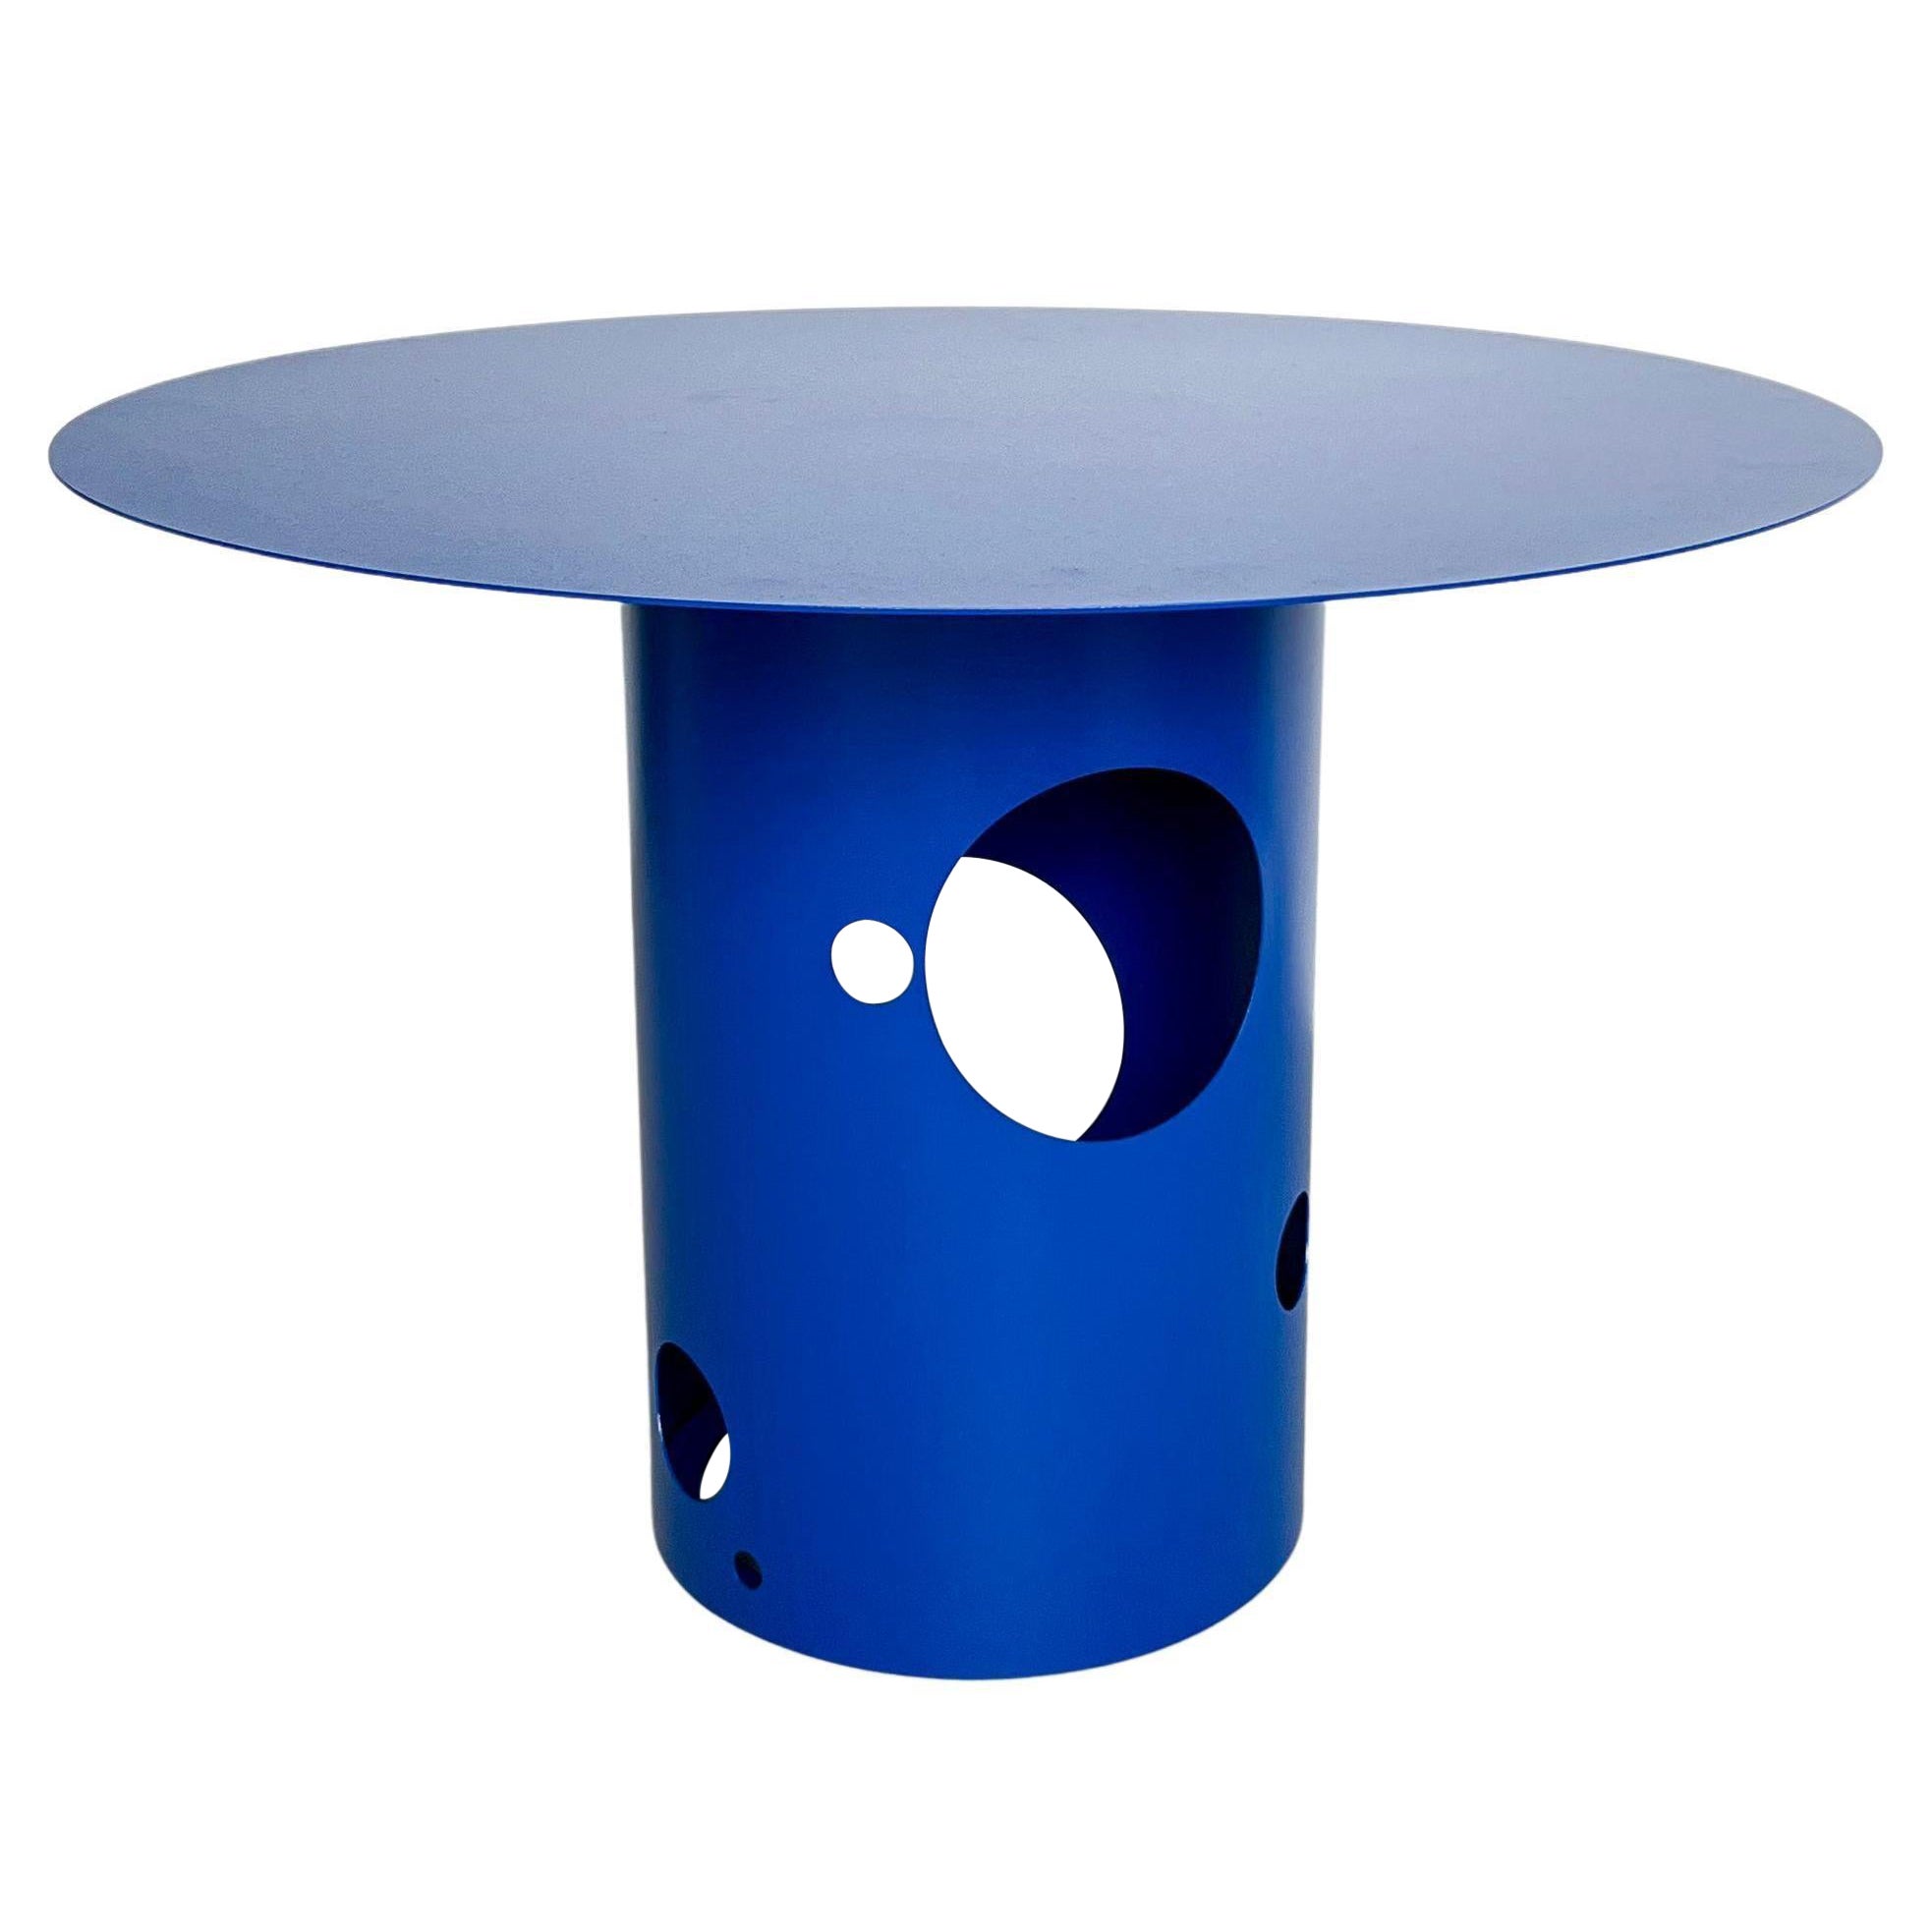 Table de salle à manger italienne contemporaine du 21e siècle Silos par Spinzi, bleu électrique